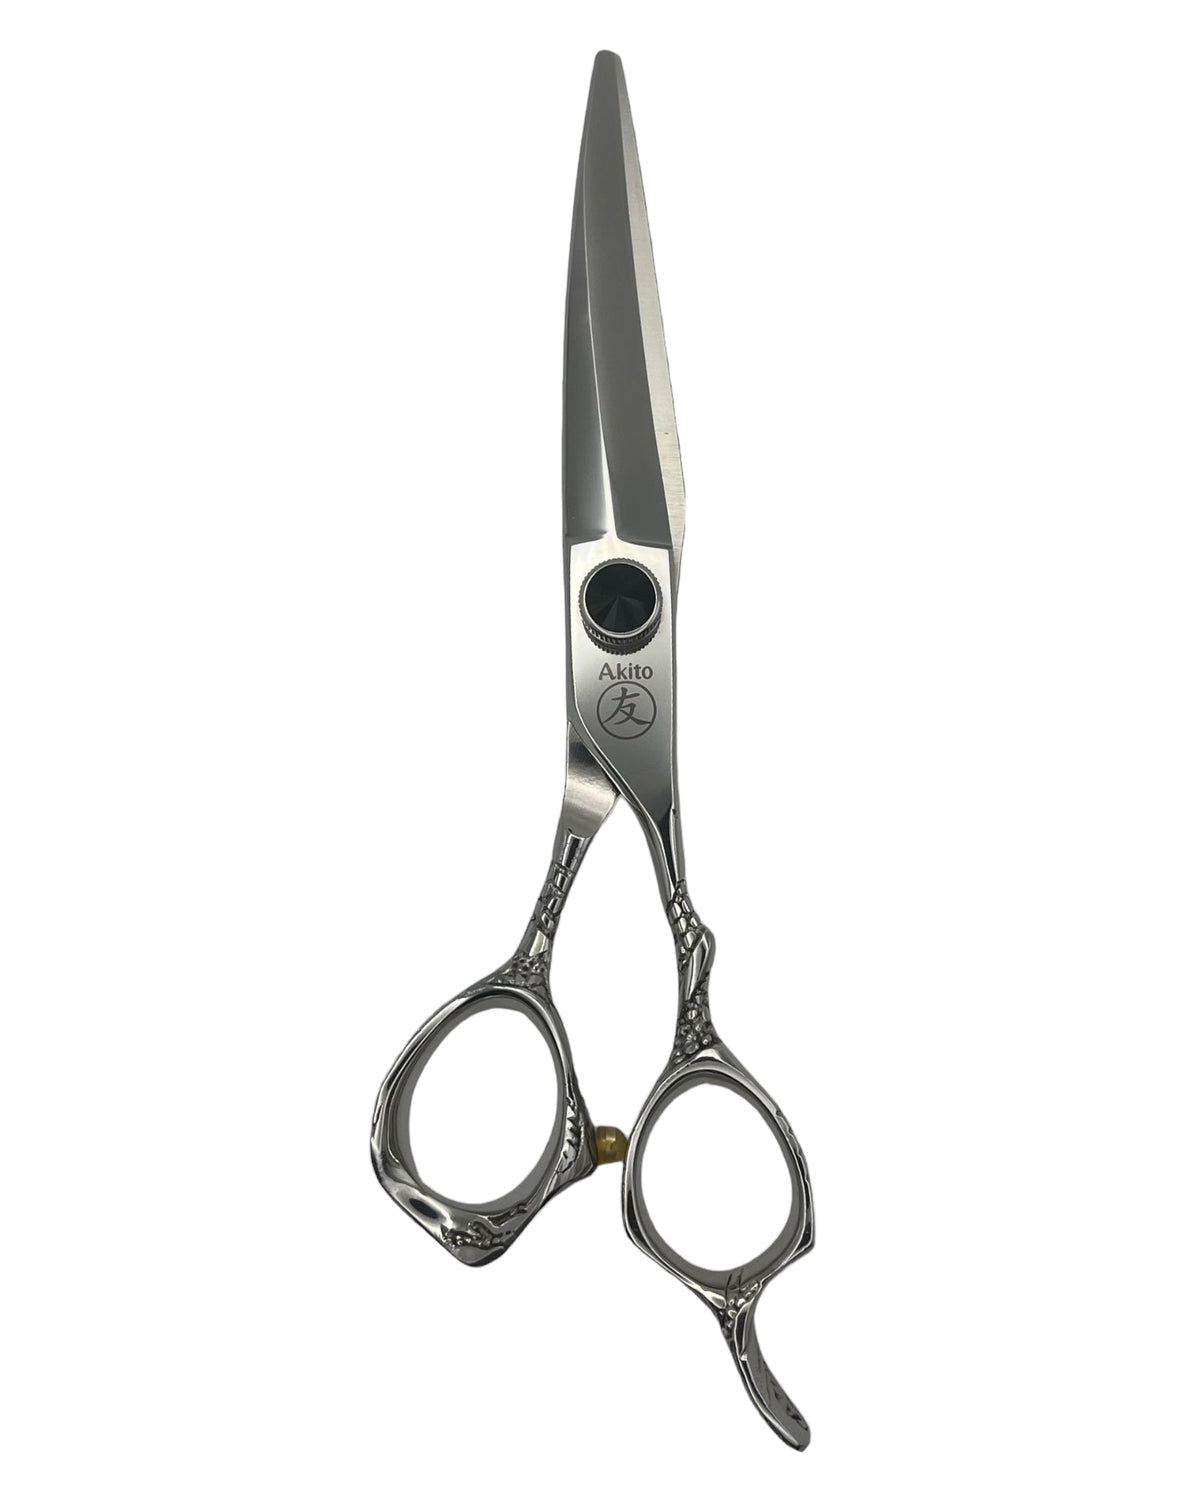 Akito Edge Barber Scissors in 6.0inch